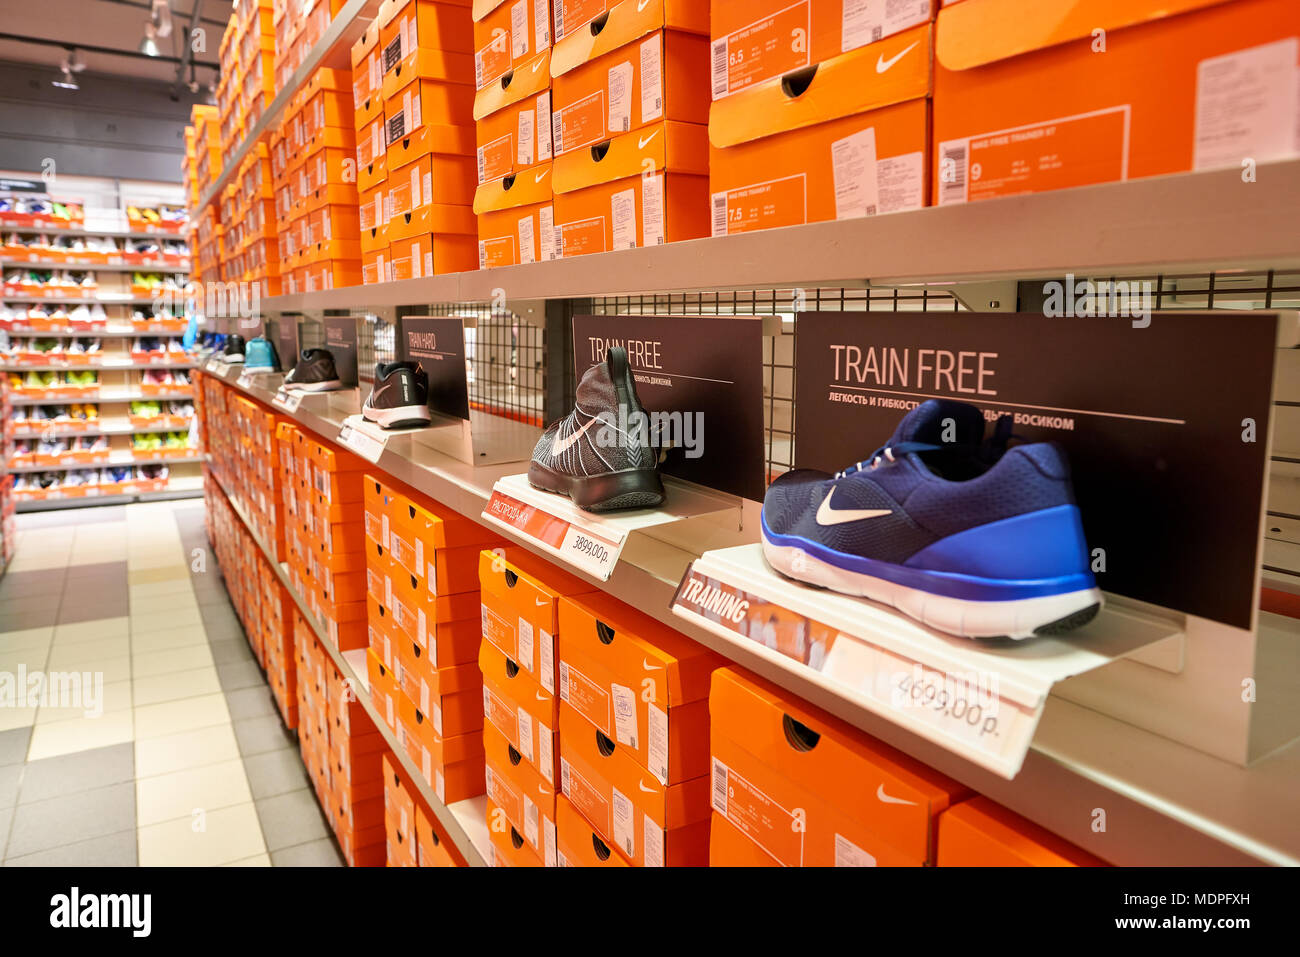 Nike factory immagini e fotografie stock ad alta risoluzione - Alamy